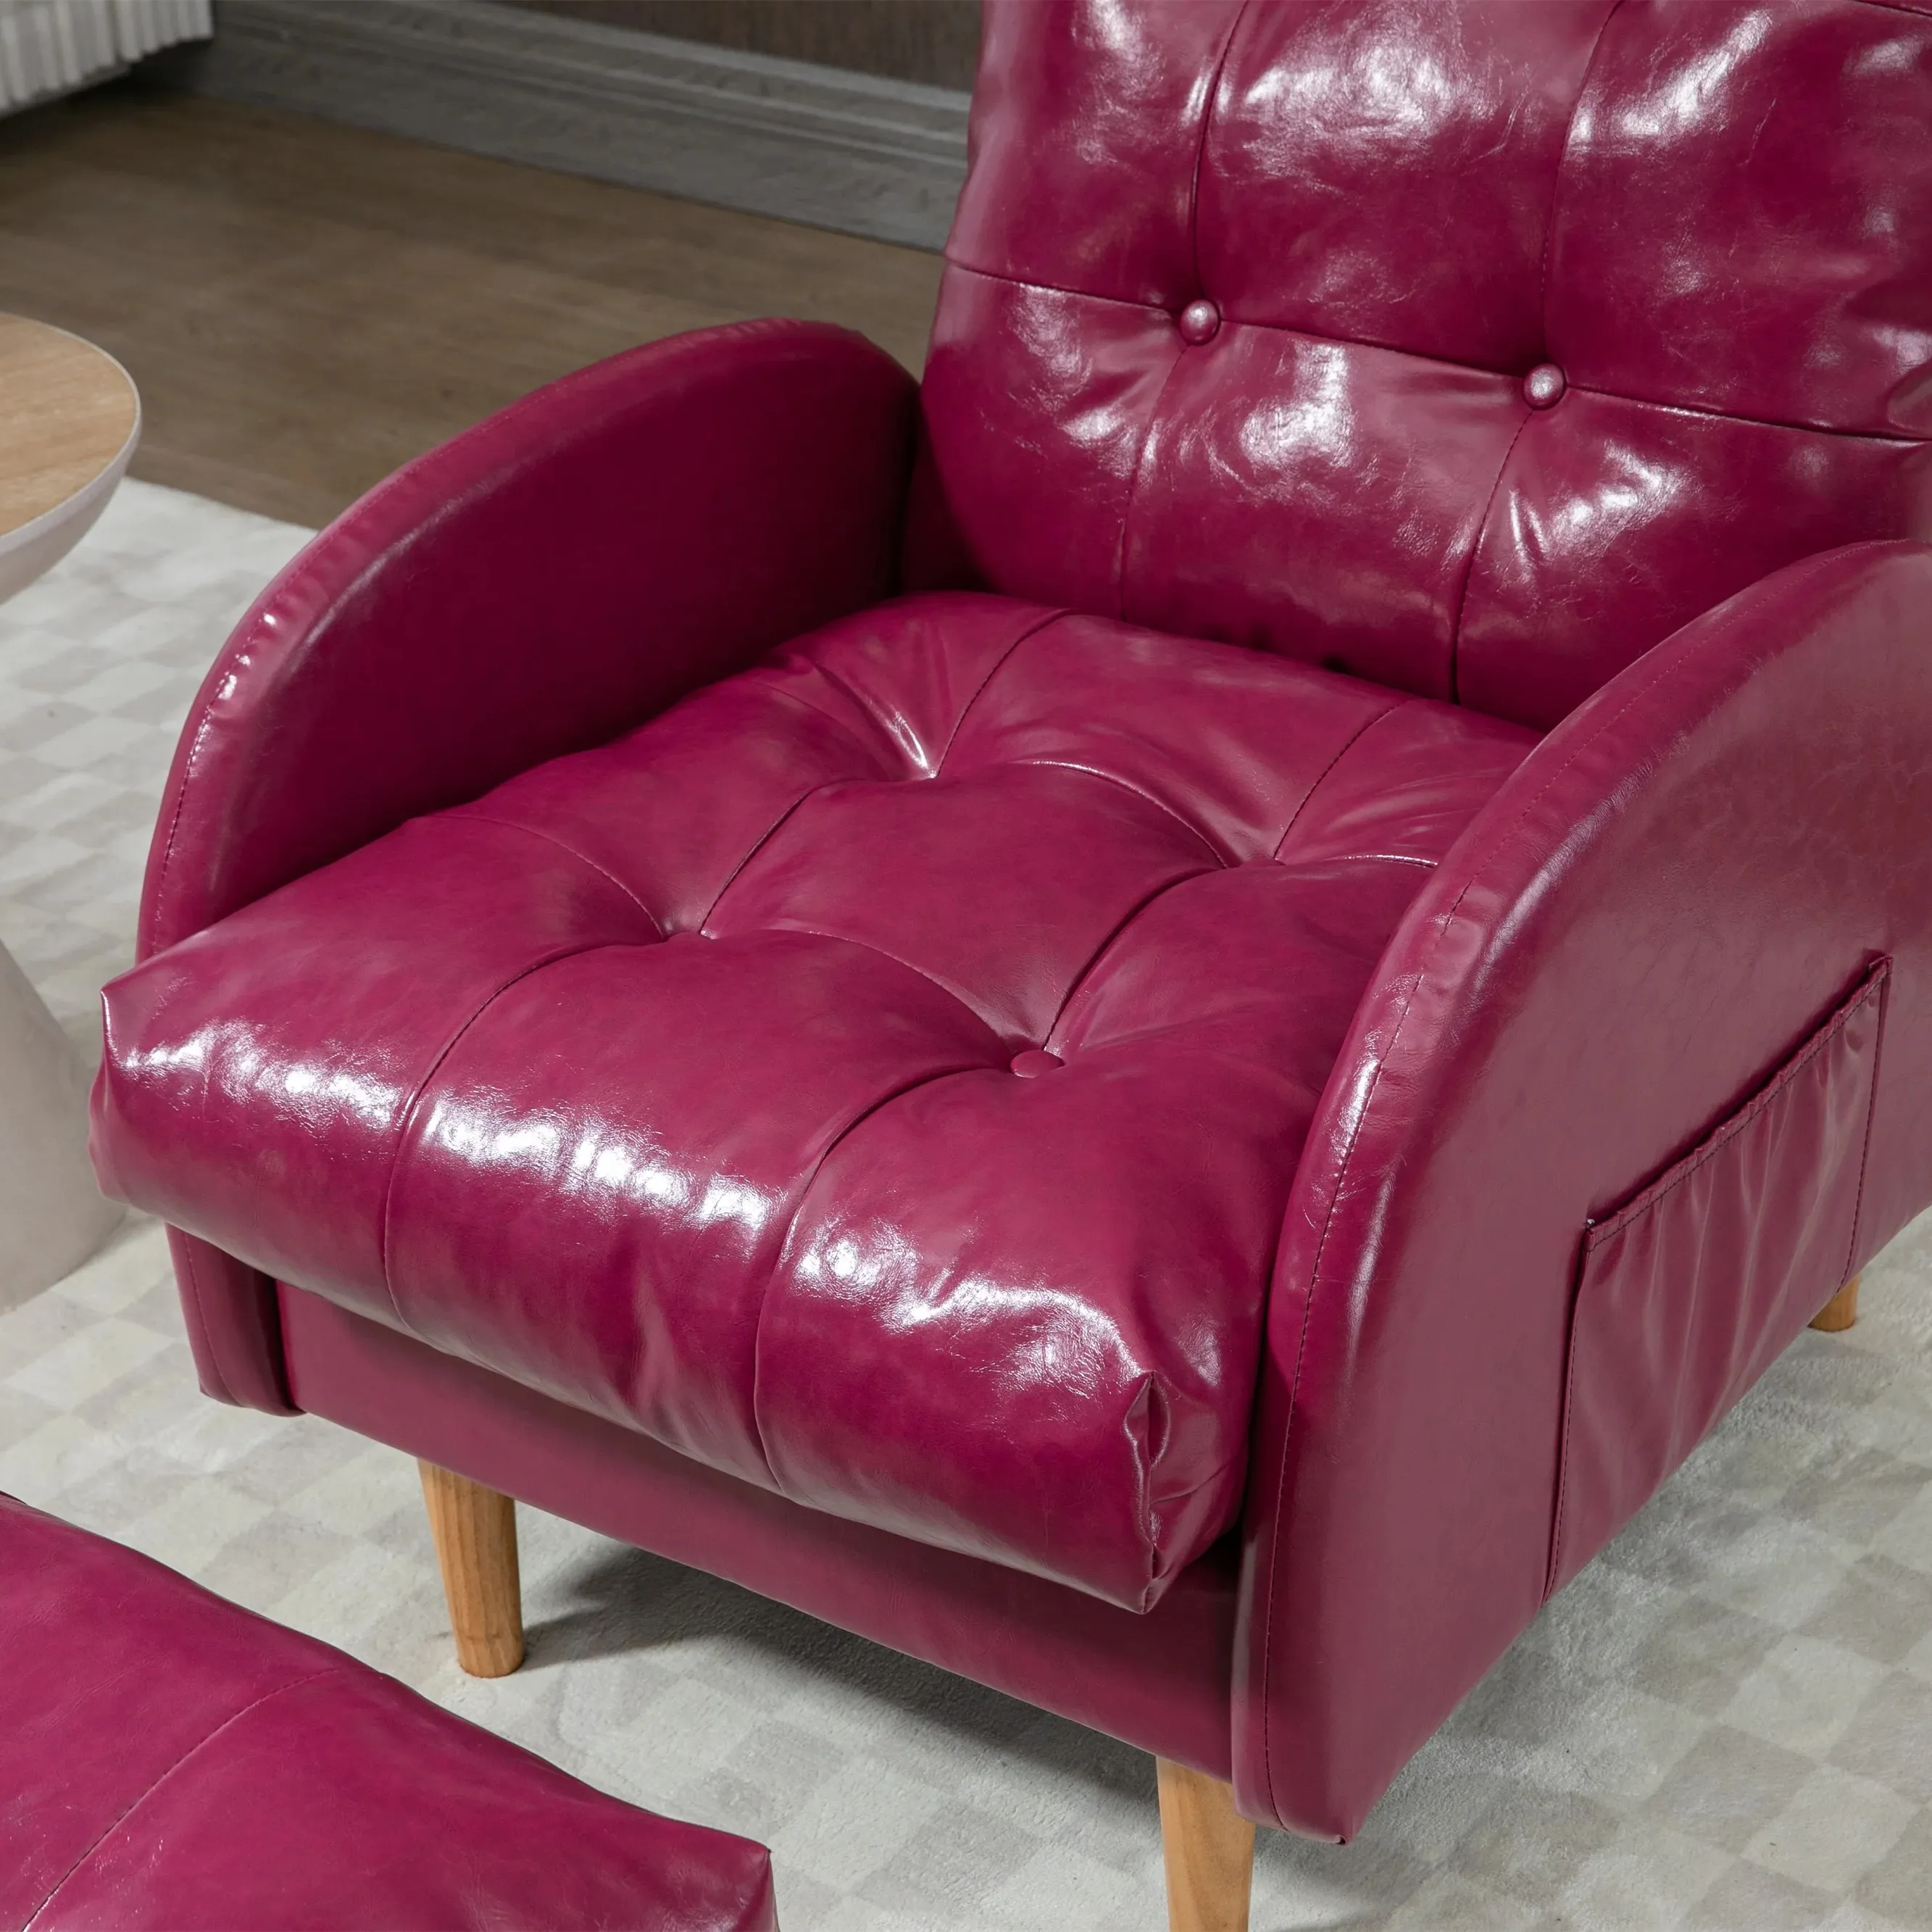 Rose Red bán buôn phòng khách sang trọng có thể điều chỉnh ngồi có thể ngả phòng chờ ghế với footstool